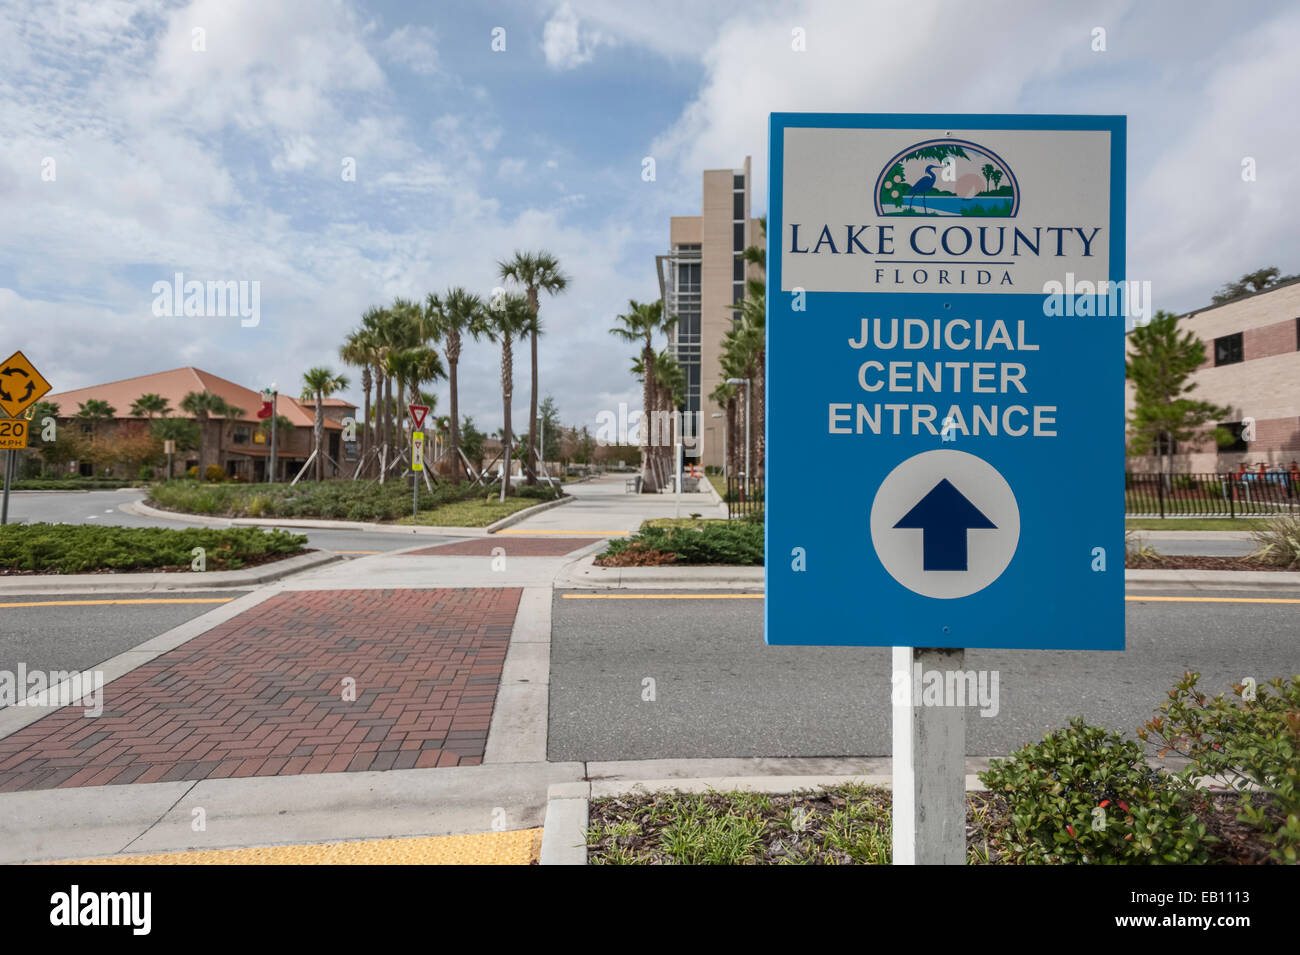 Judicial Center Tavares Lake County Florida USA Entrance Sign Stock Photo